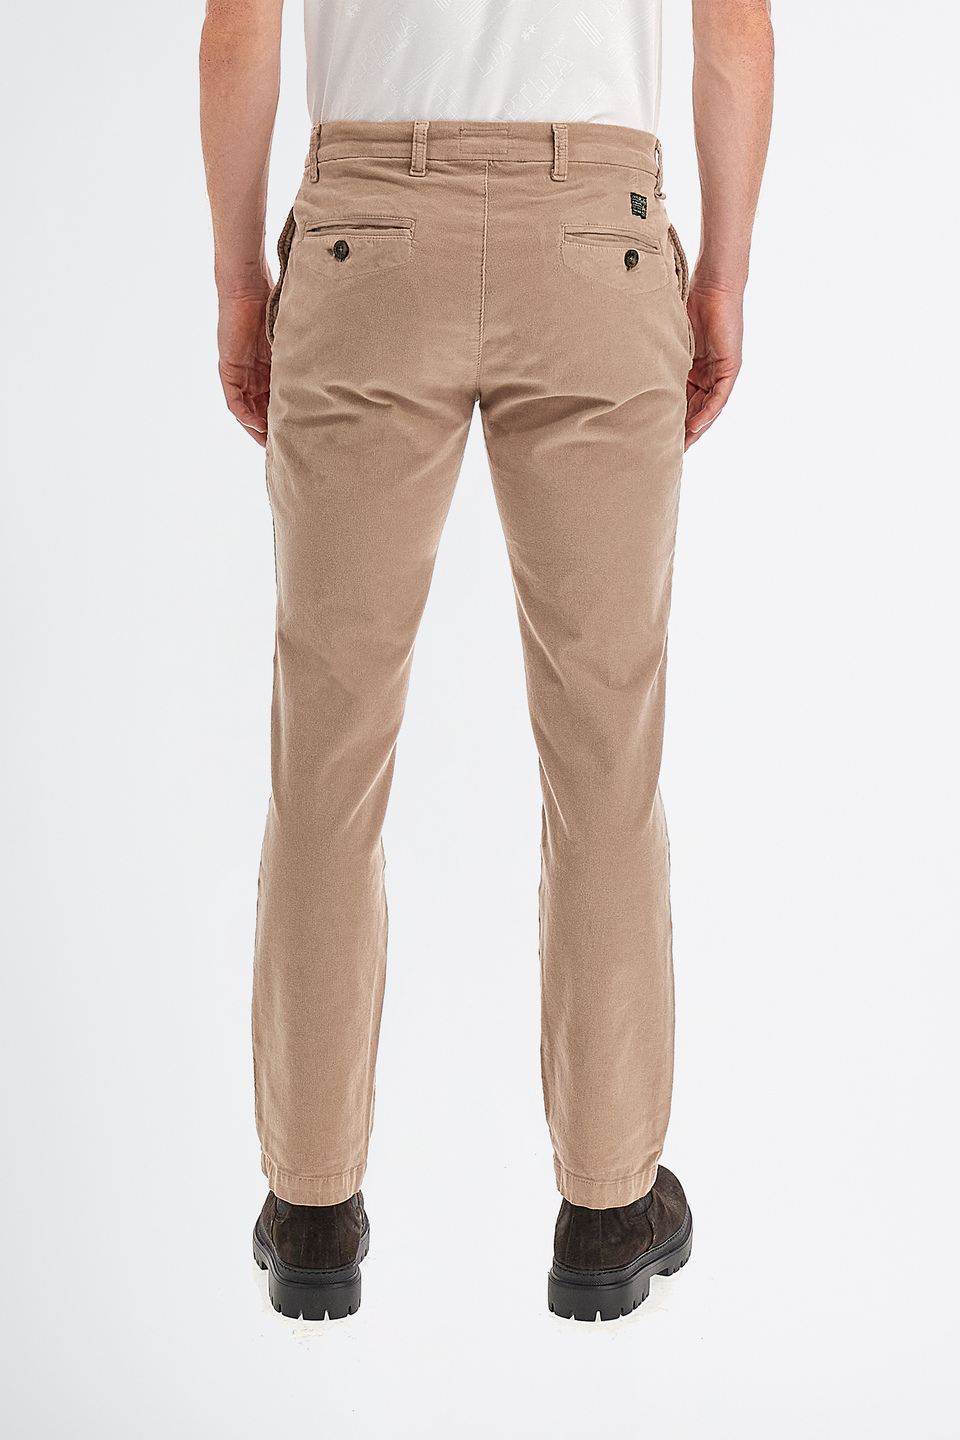 Pantalon régulier 5 poches en velours côtelé pour hommes | La Martina - Official Online Shop